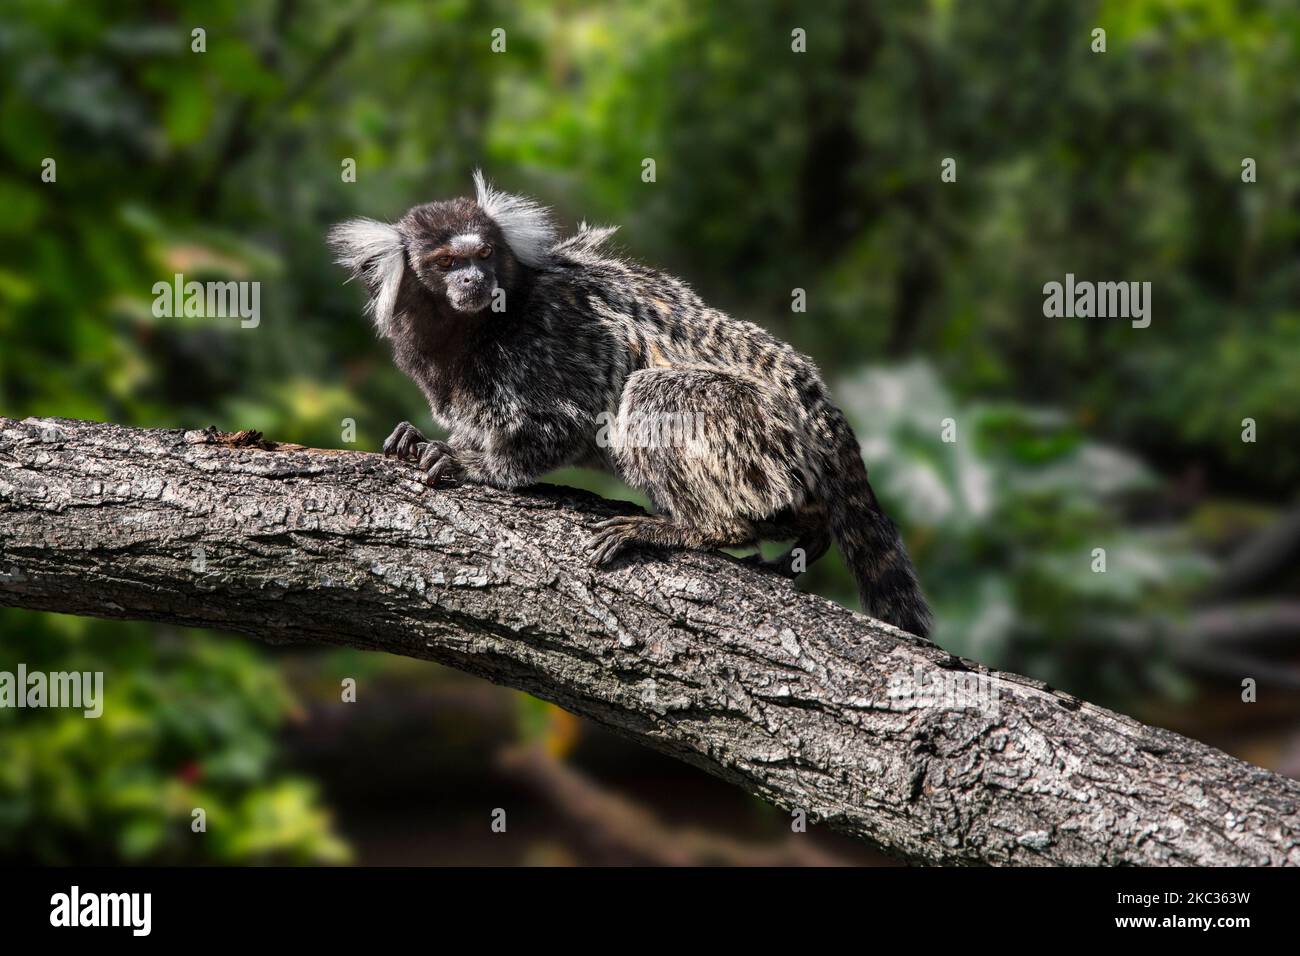 Marmoset comune / marmoset bianco-tufted / marmoset bianco-tufted-orecchio (Callithrix jacchus) nella foresta, scimmia del nuovo mondo nativo del Brasile Foto Stock